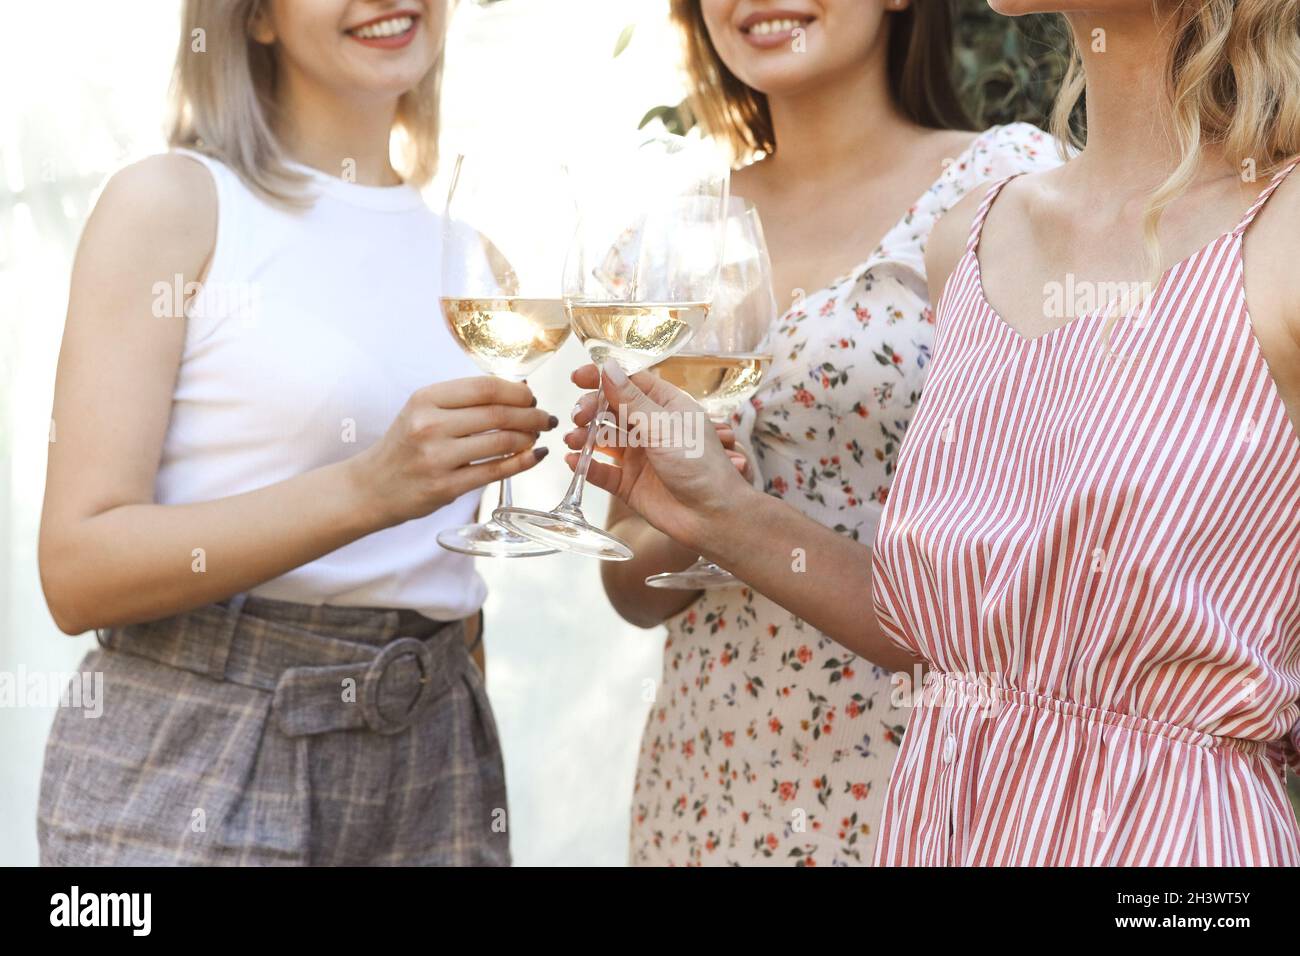 Les femmes récoltant du vin pendant le pique-nique Banque D'Images